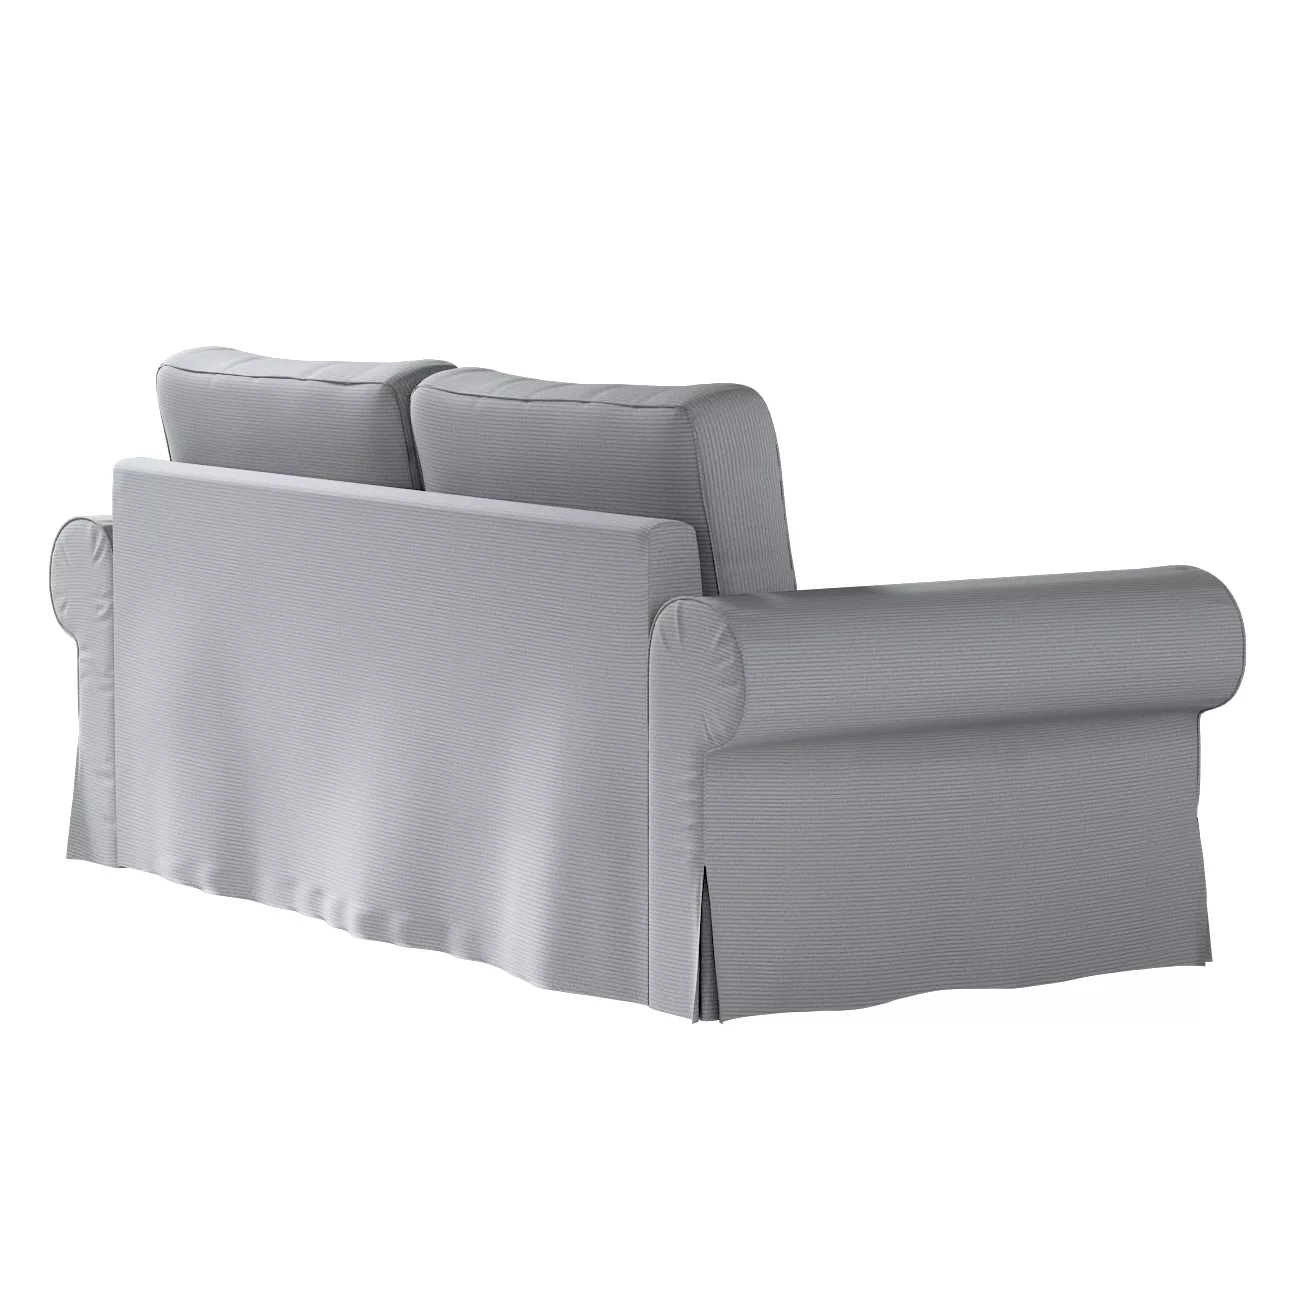 Bezug für Backabro 3-Sitzer Sofa ausklappbar, hellgrau, Bezug für Backabro günstig online kaufen